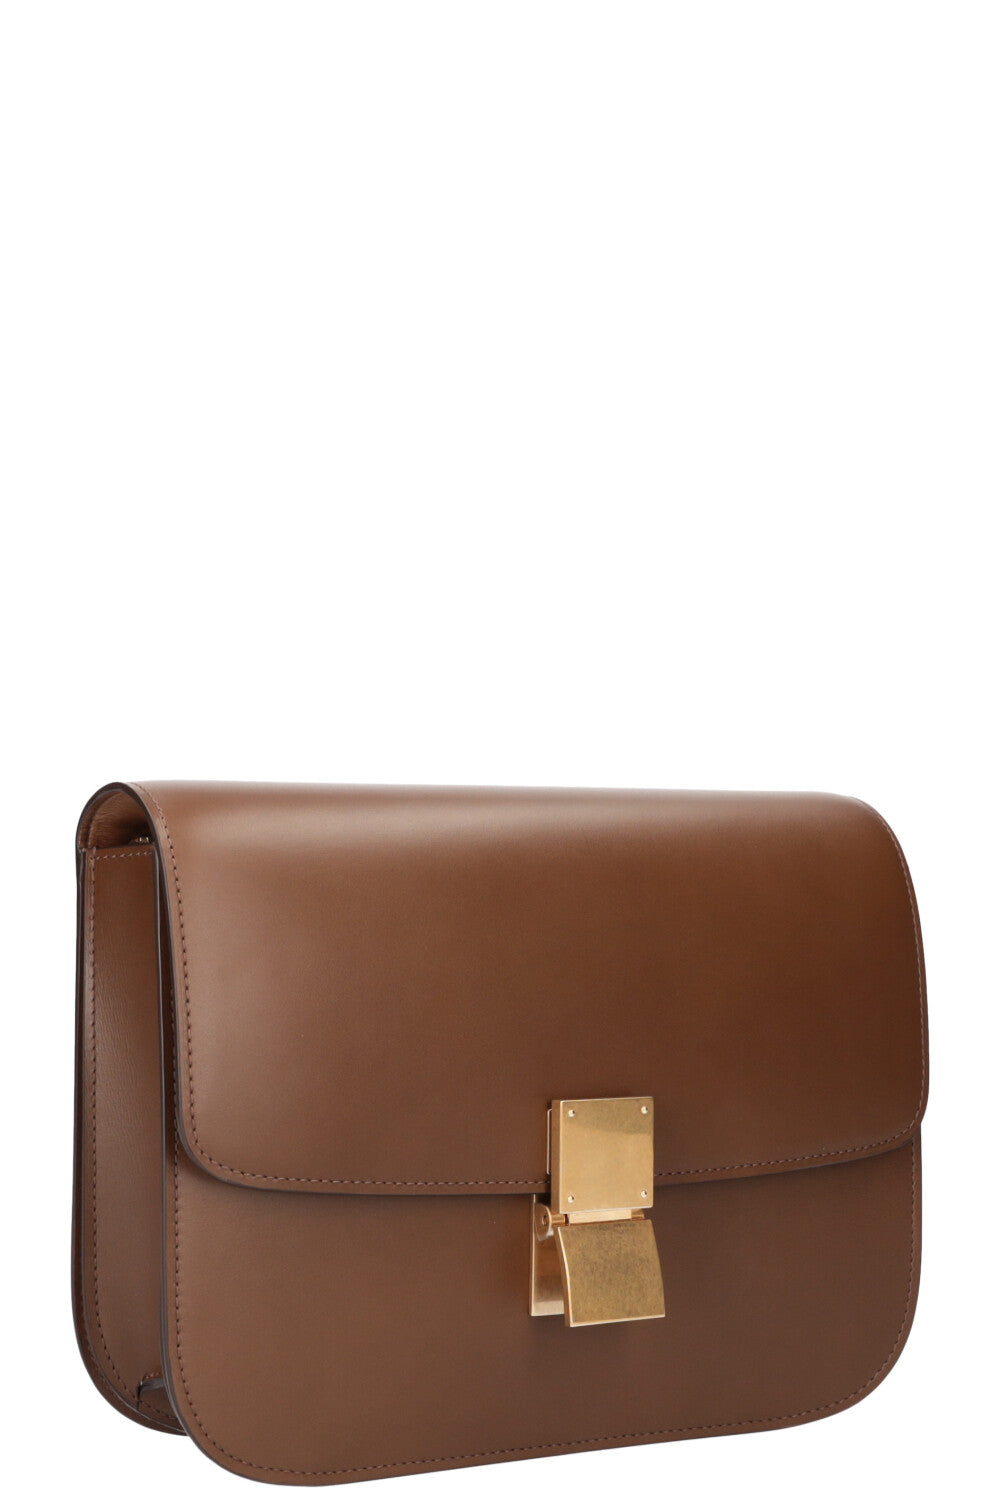 CELINE Classic Box Bag Medium Brown